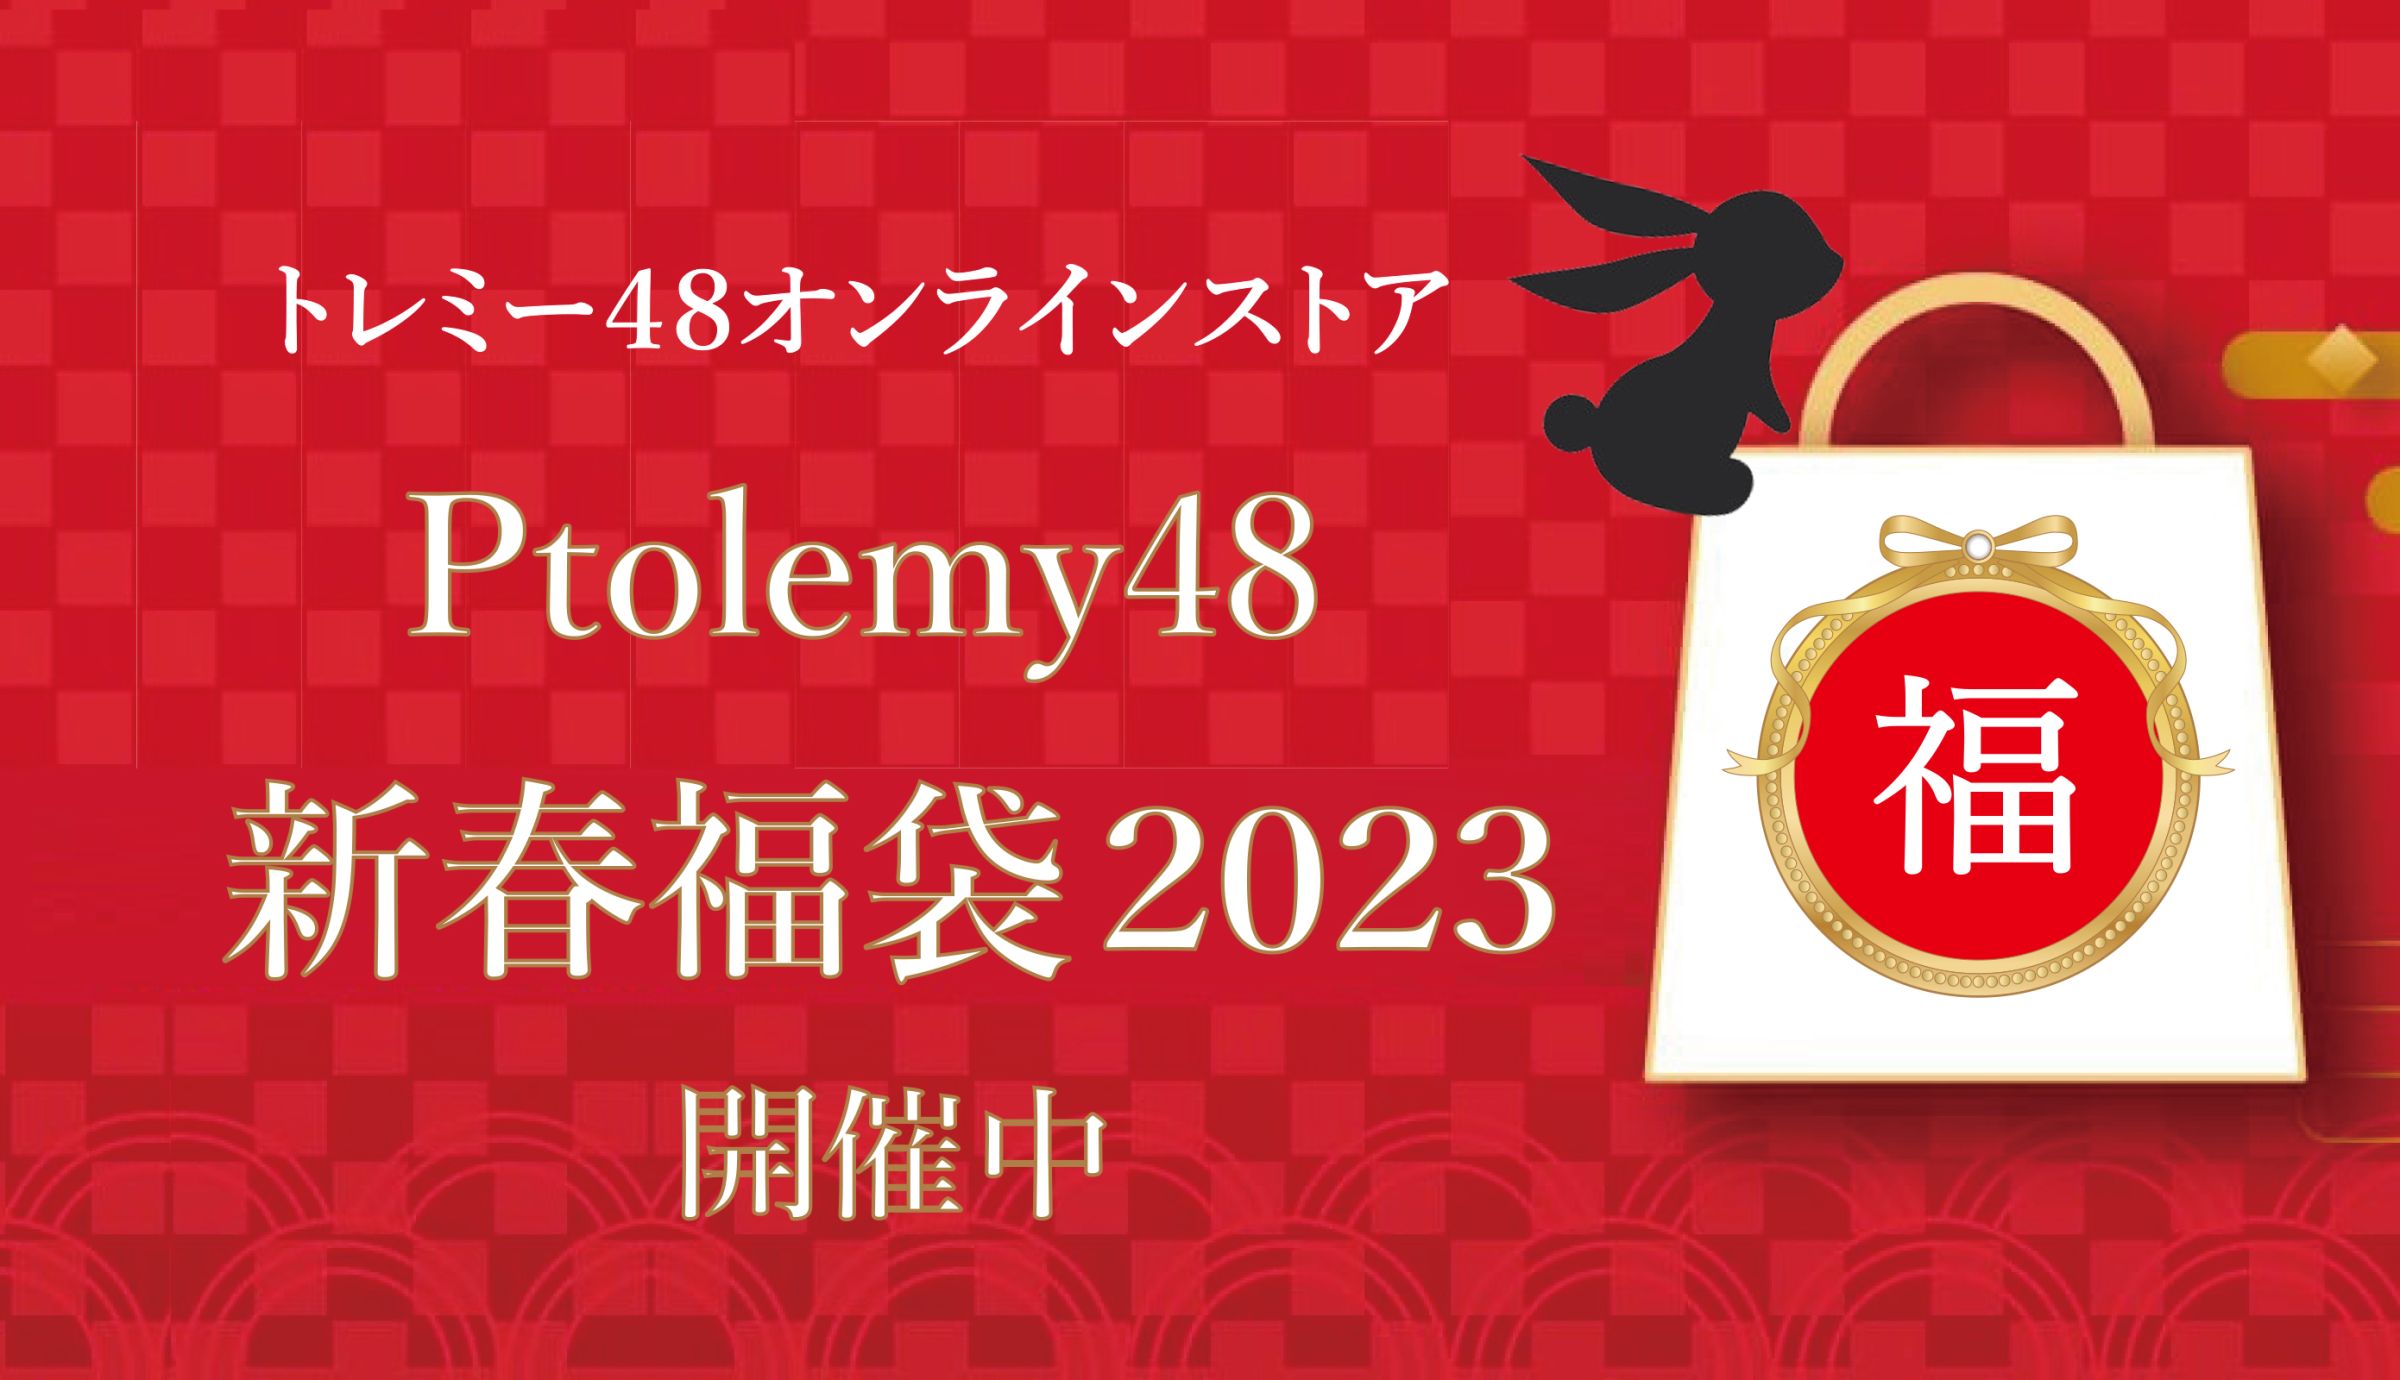 2023年新春福袋 ヴィンテージ太セル&サングラス / 2023年福袋(2万2000円)